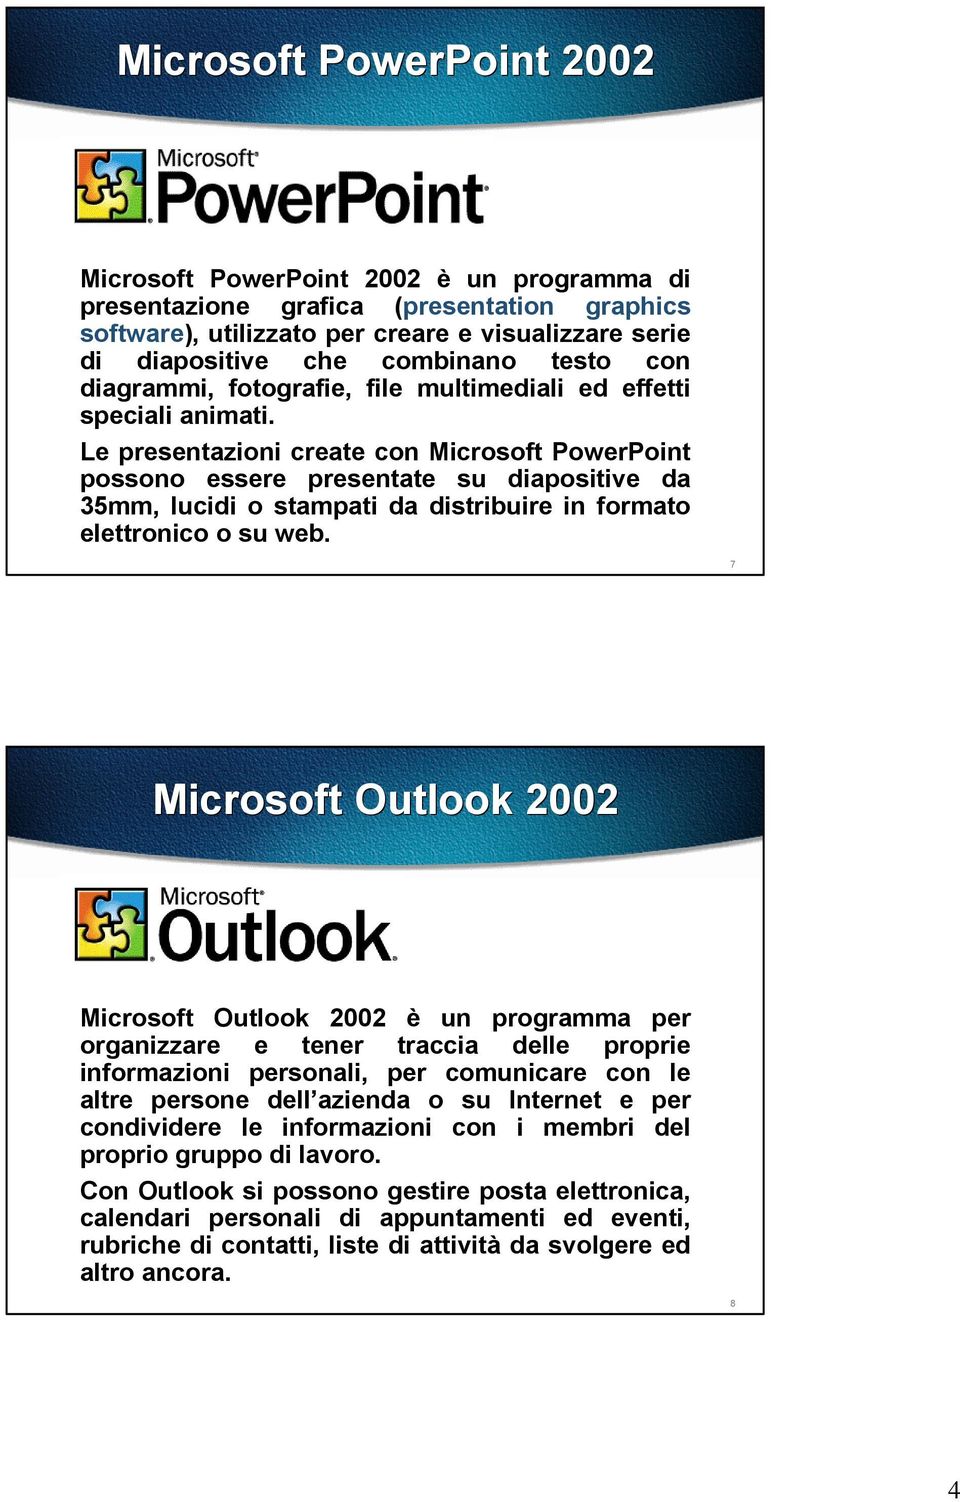 Le presentazioni create con Microsoft PowerPoint possono essere presentate su diapositive da 35mm, lucidi o stampati da distribuire in formato elettronico o su web.